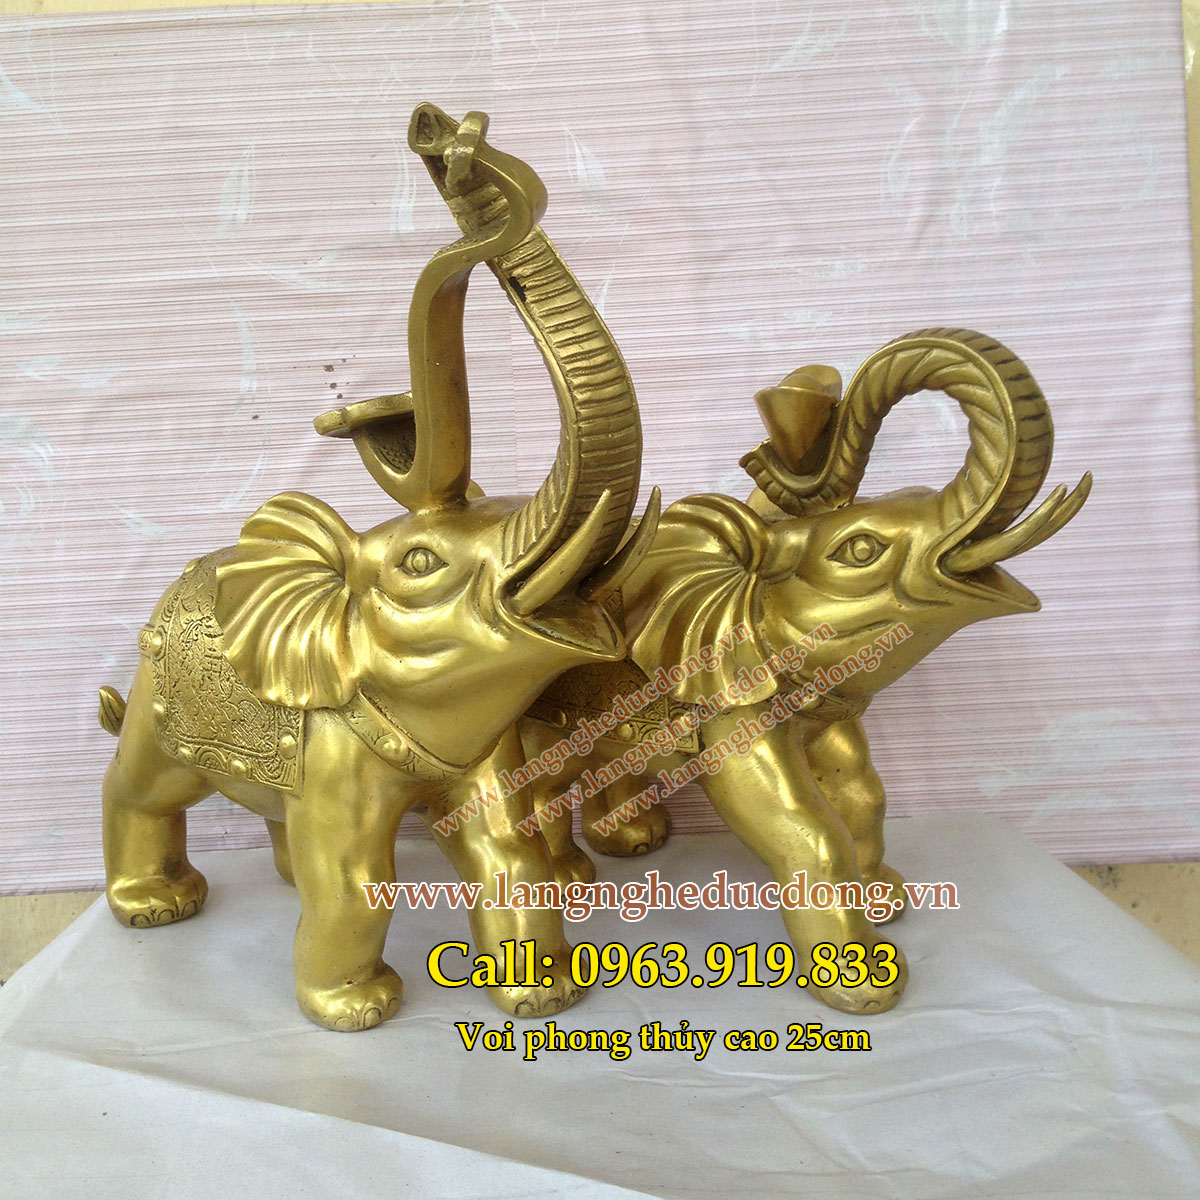 langngheducdong.vn - Kim tượng, voi đồng – Linh vật phong thủy bằng đồng